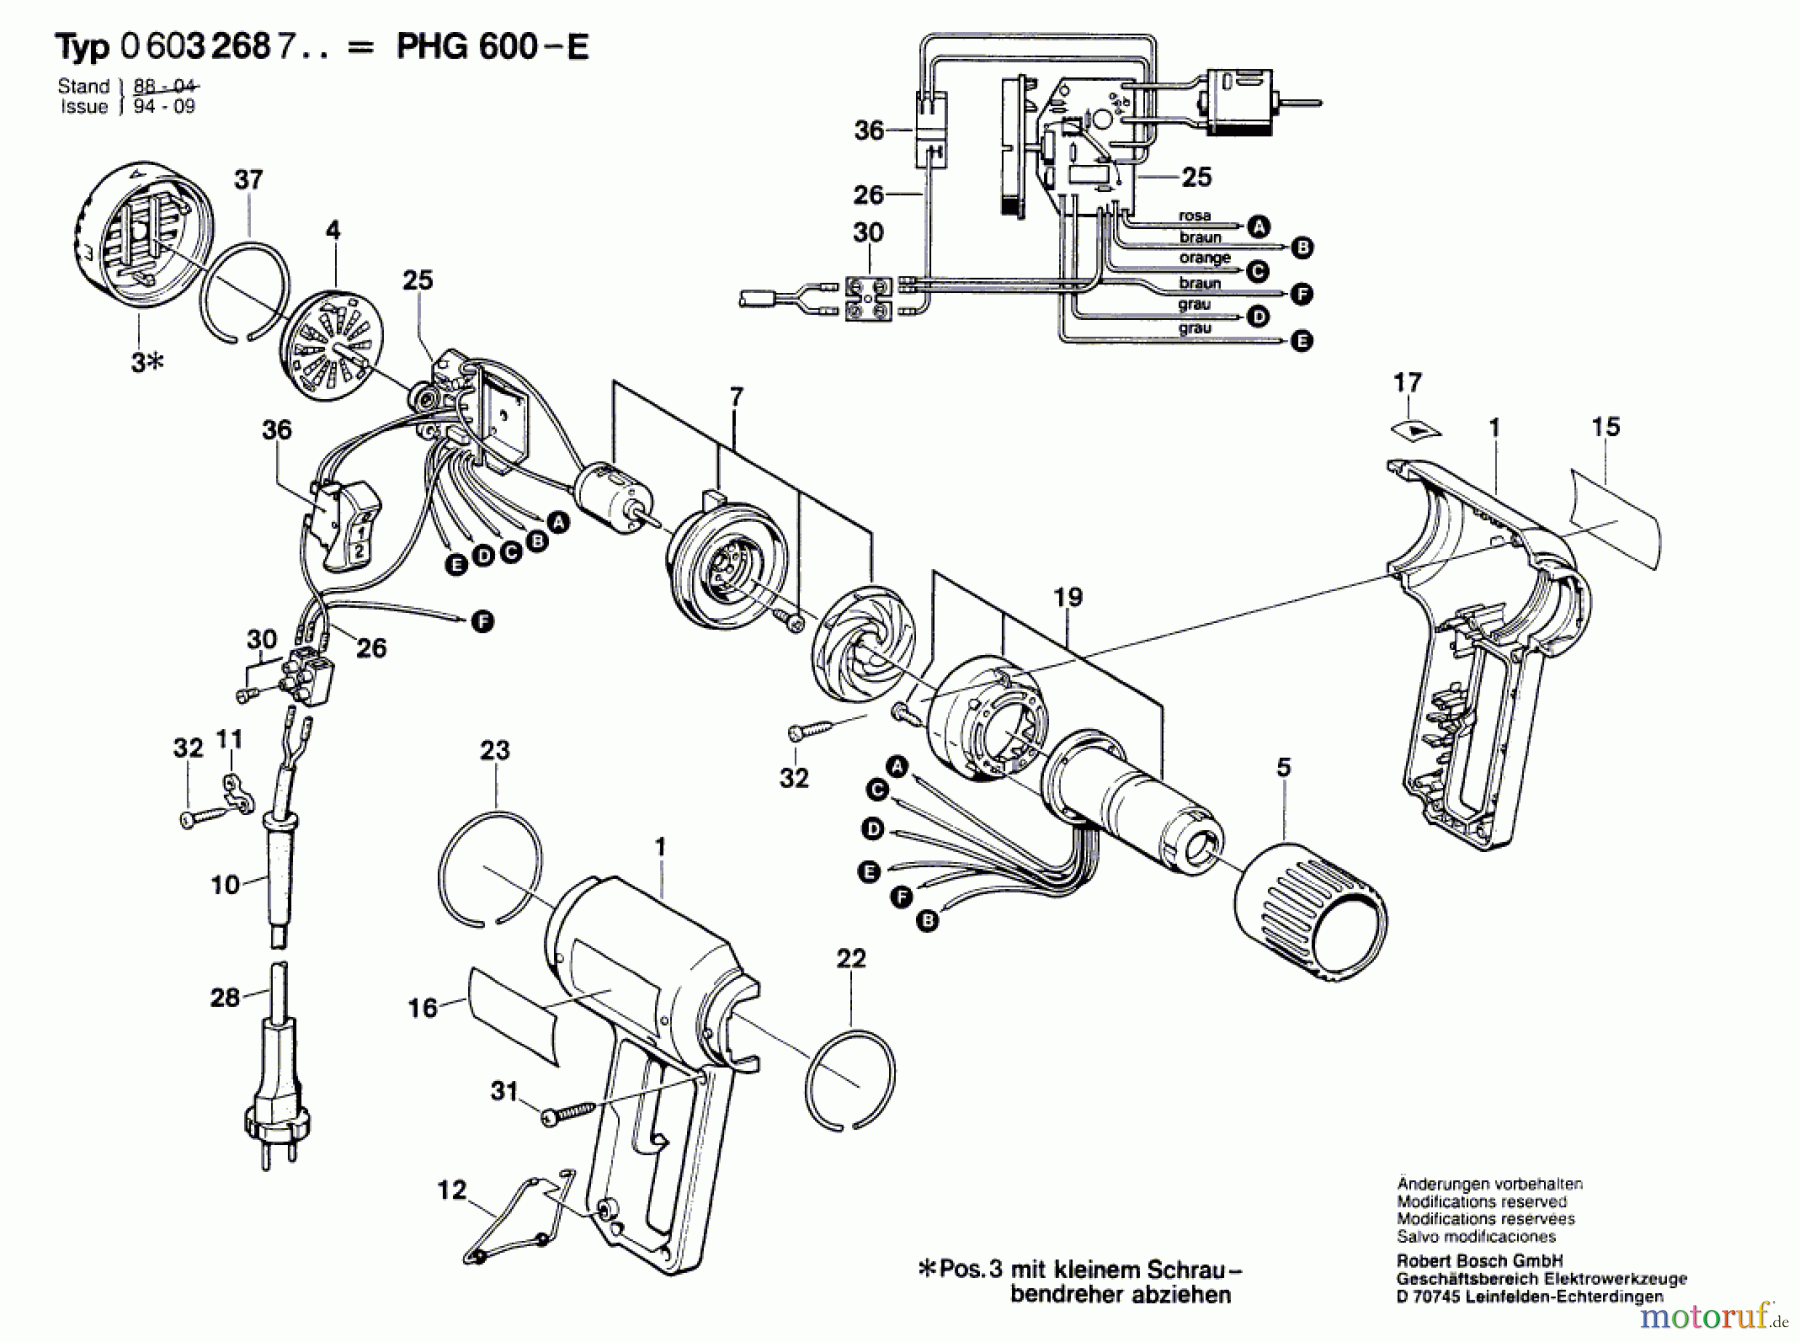  Bosch Werkzeug Heissluftgebläse PHG 600-E Seite 1